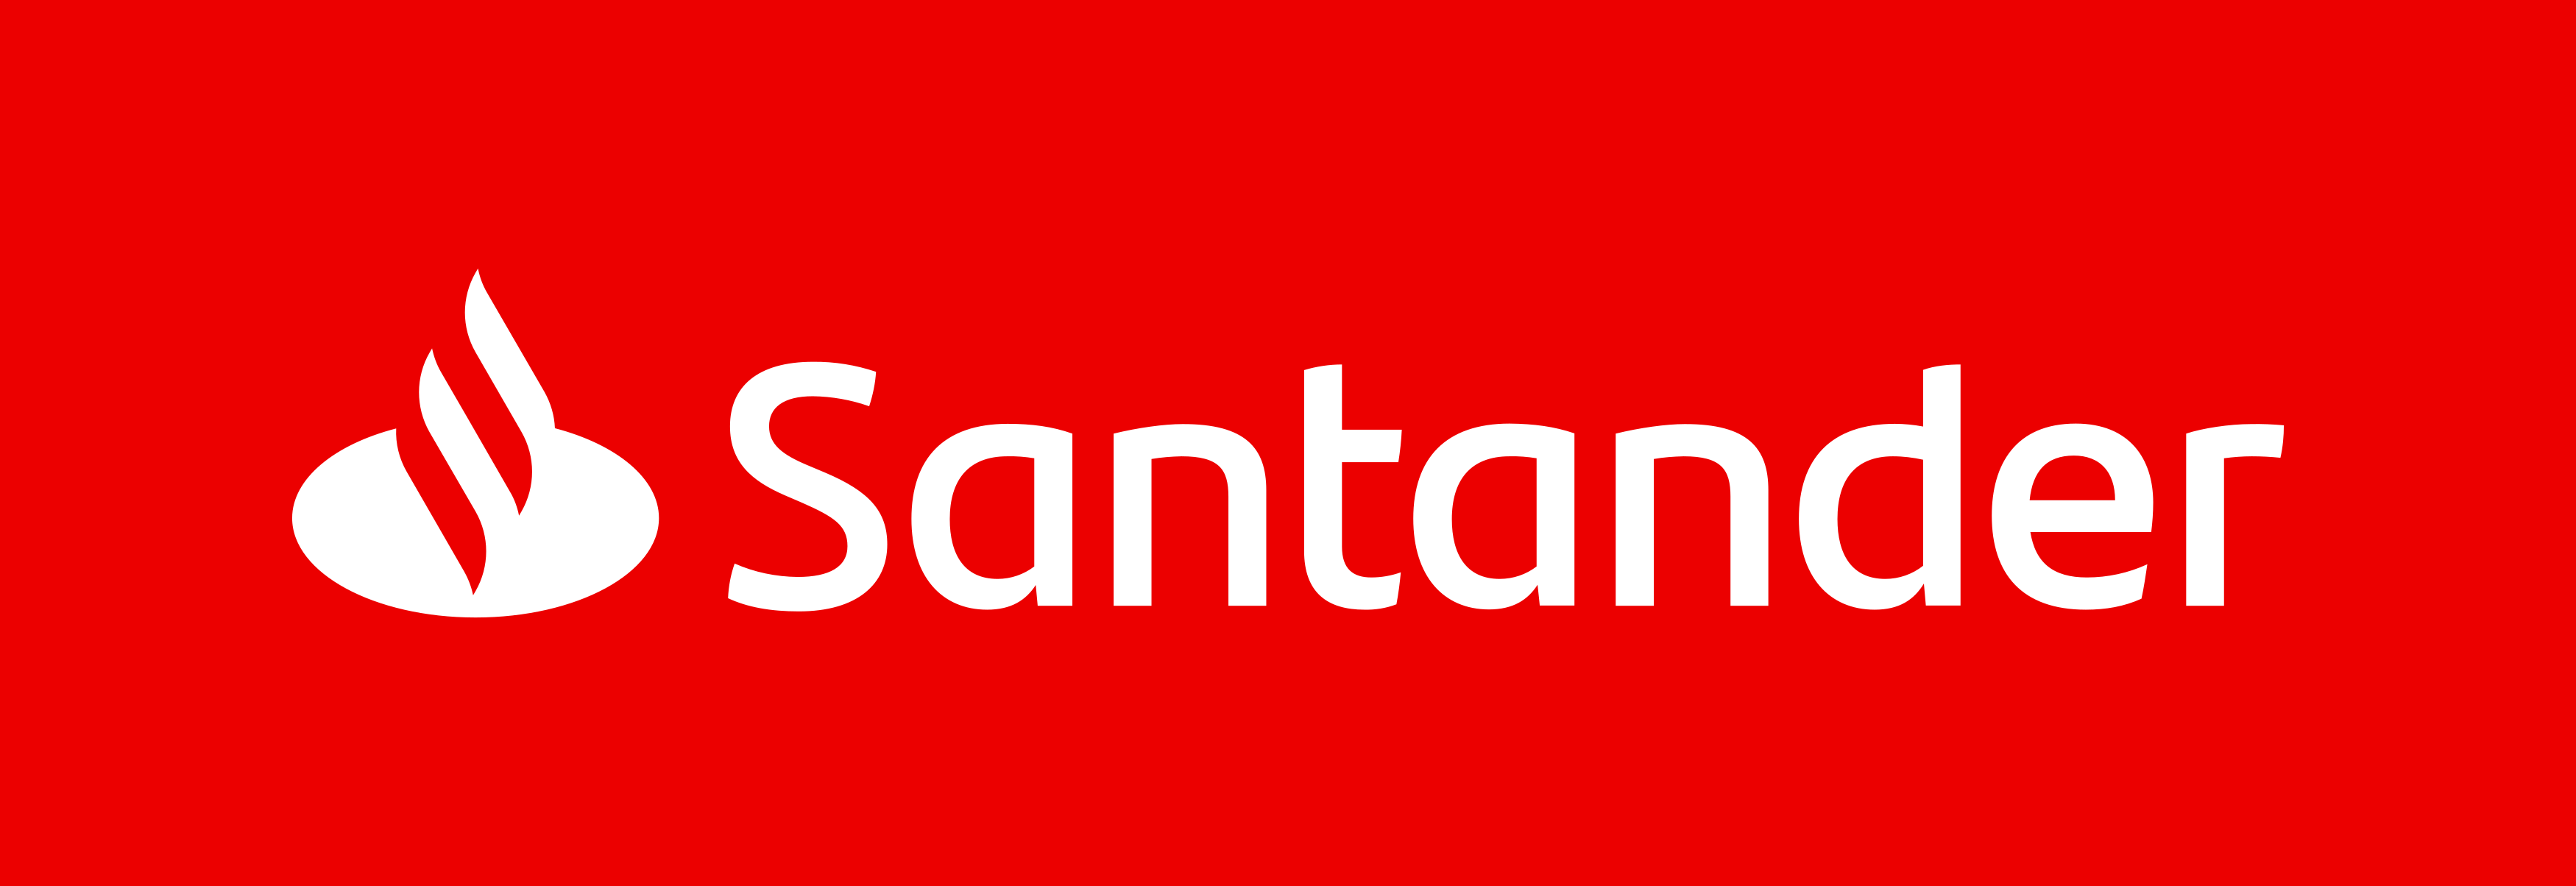 Contudo, veja as principais informações sobre o consórcio imobiliário Santander. Fonte: Santander.